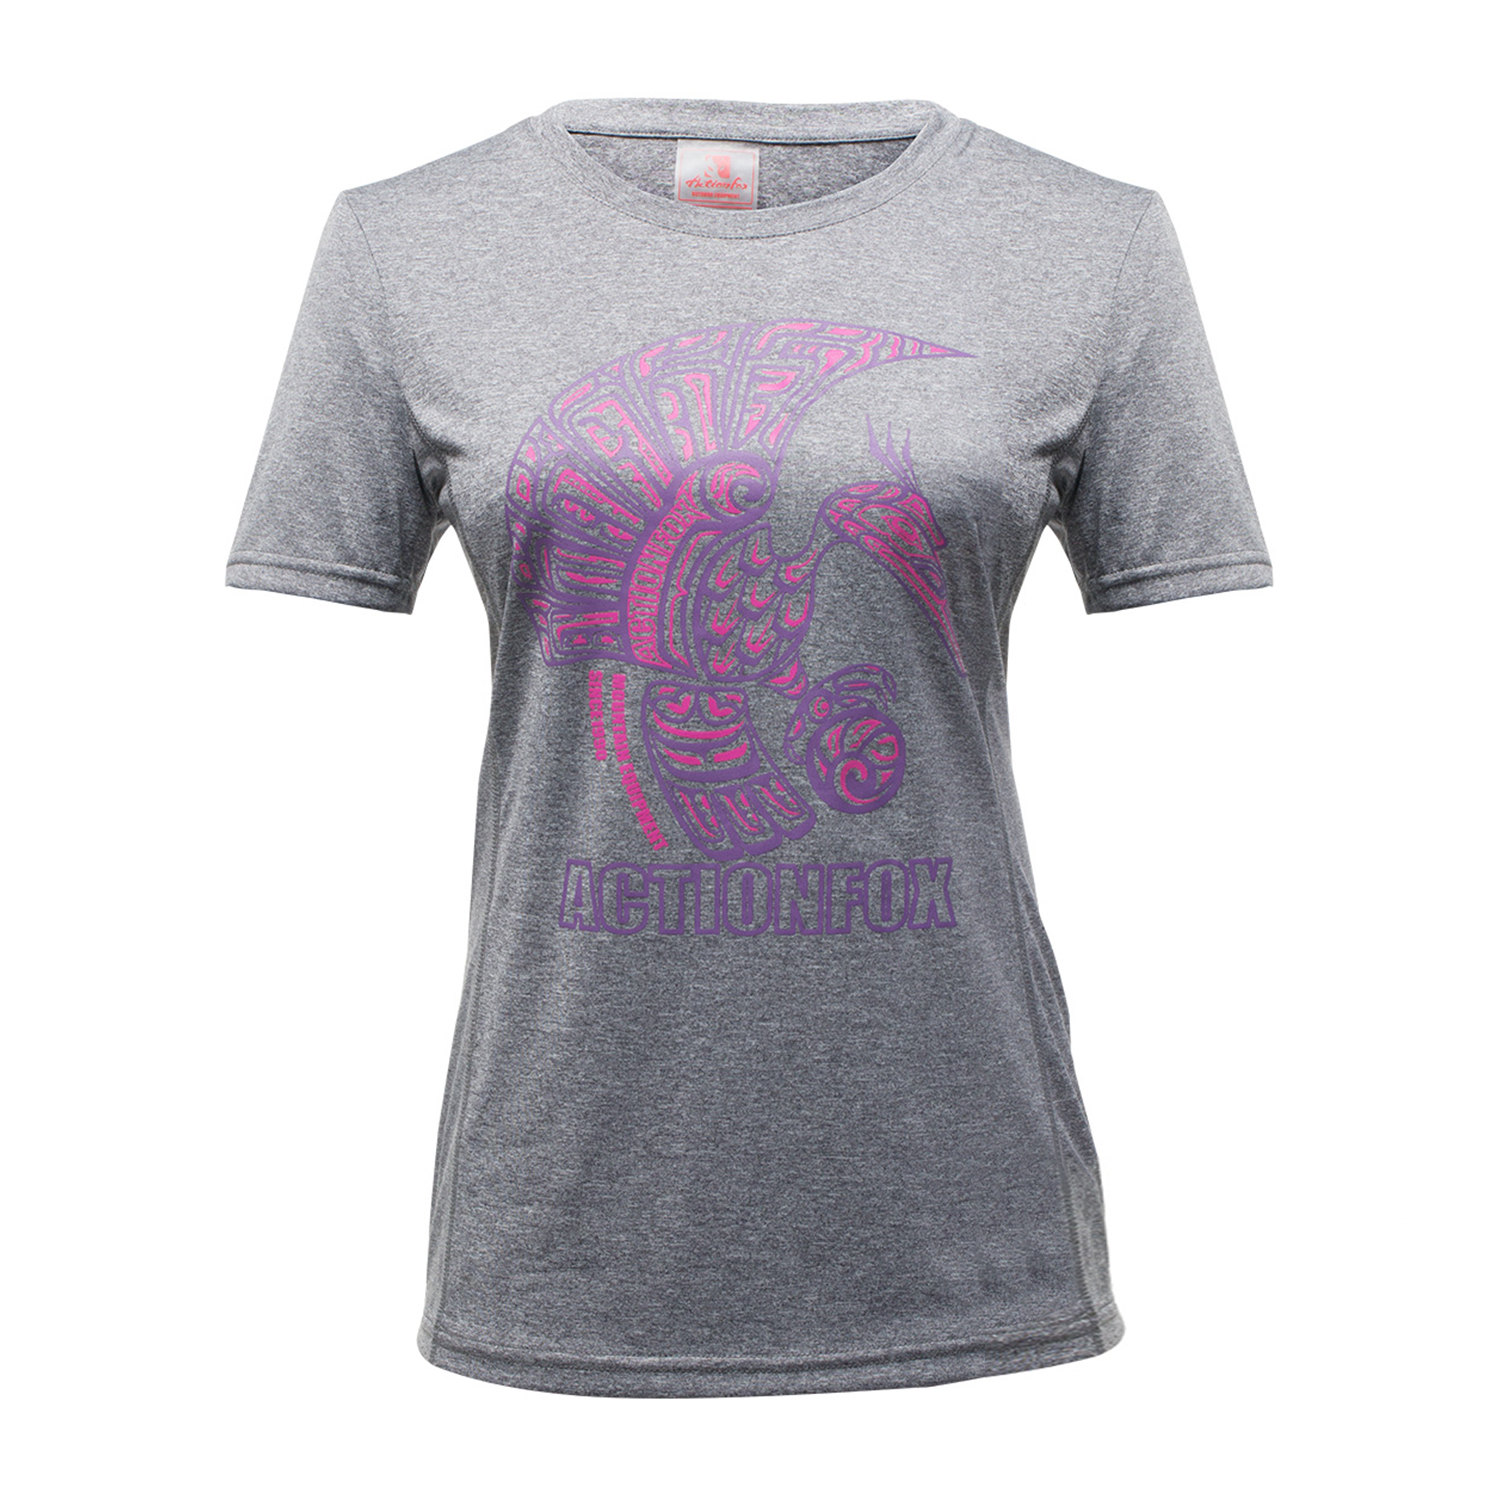 T-shirt sport pour femme ACTIONFOX à manche courte - Ref 2027498 Image 5